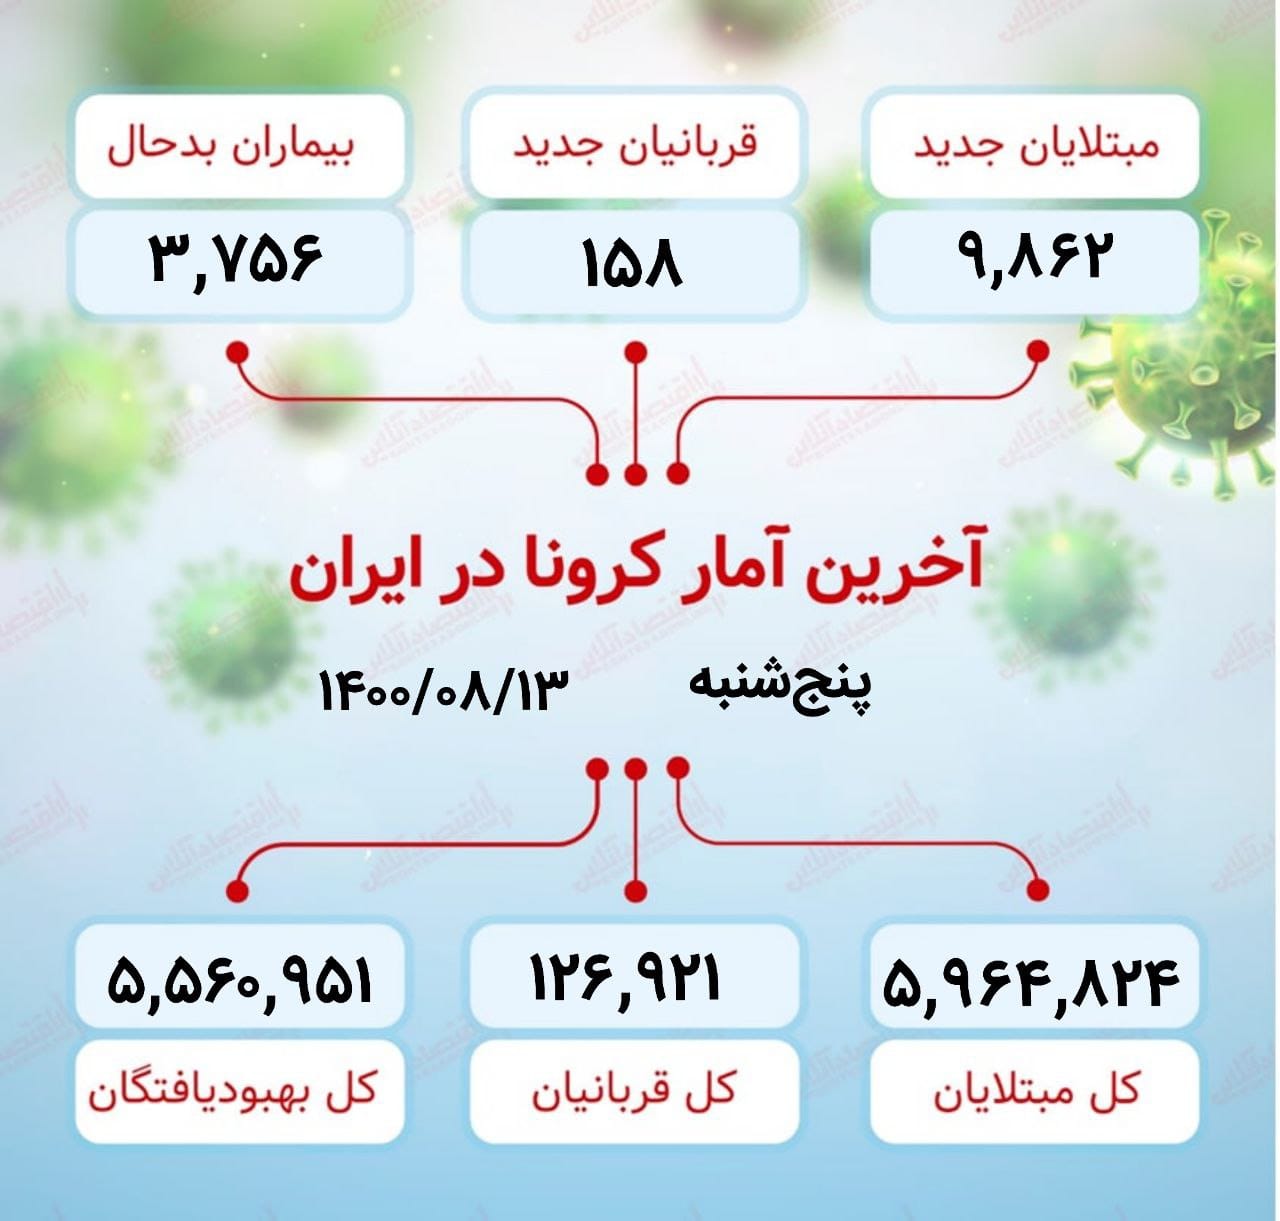  آخرین آمار کرونا در ایران (۱۴۰۰/۸/۱۳)​​ 